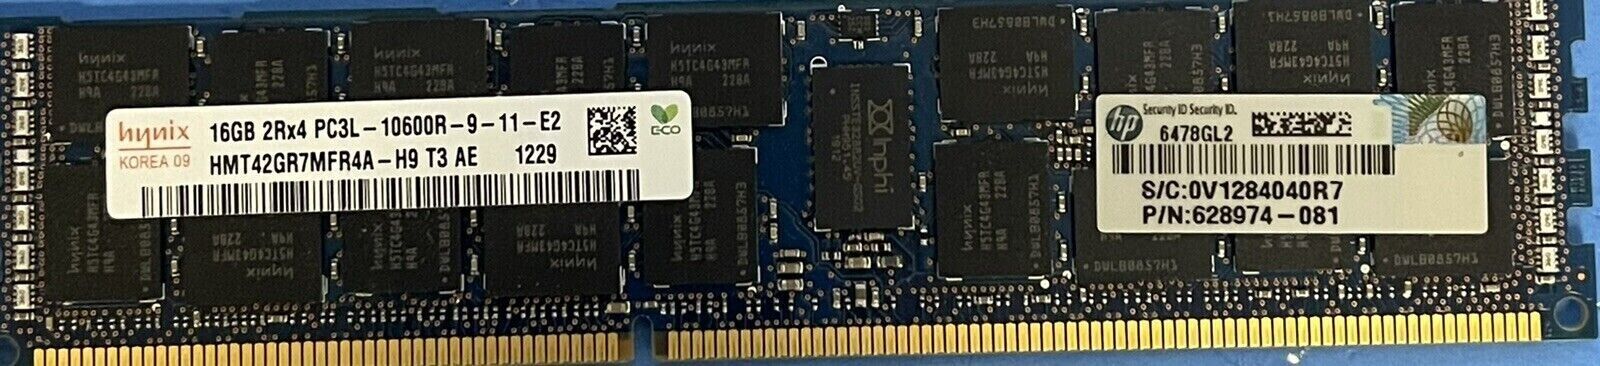 144GB (9x16GB) HMT42GR7MFR4A-H9 Hynix 16GB PC3-10600 DDR3 SDRAM Memory